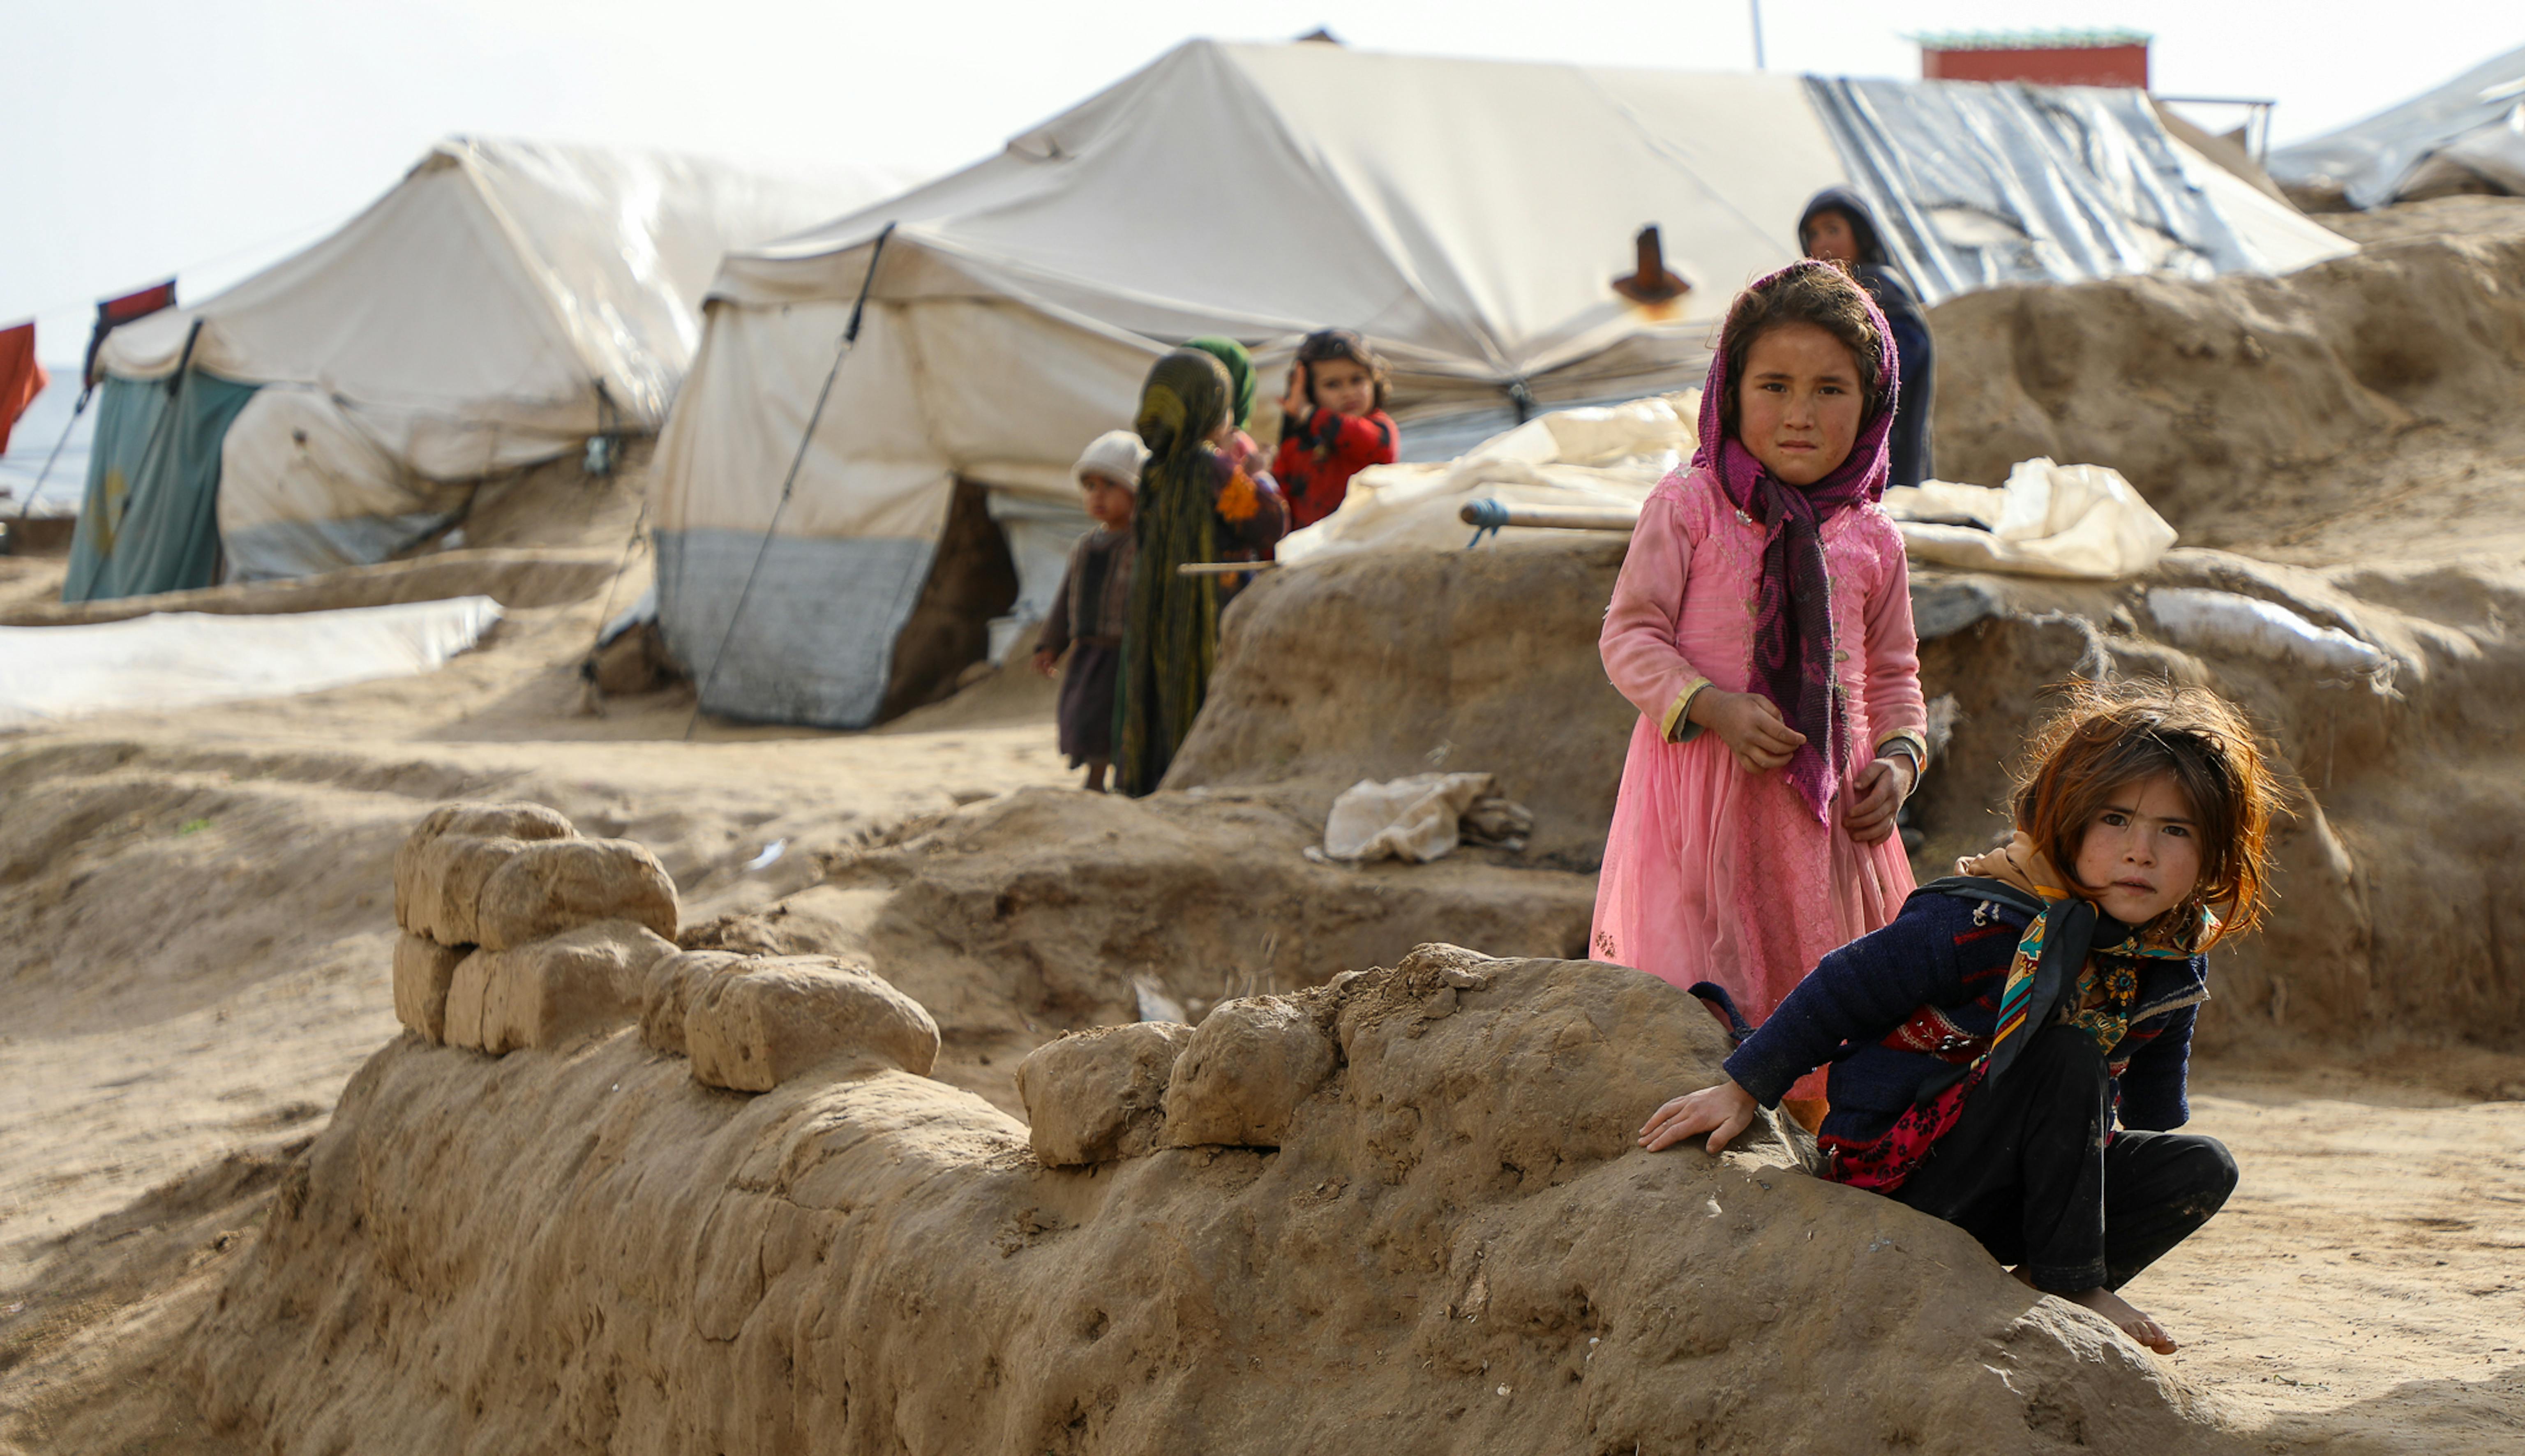 L'8 marzo 2022, l'UNICEF Afghanistan ha visitato l'insediamento di Zaimati per gli sfollati interni nella provincia di Badghis dove decine di bambini vivono in condizioni estreme